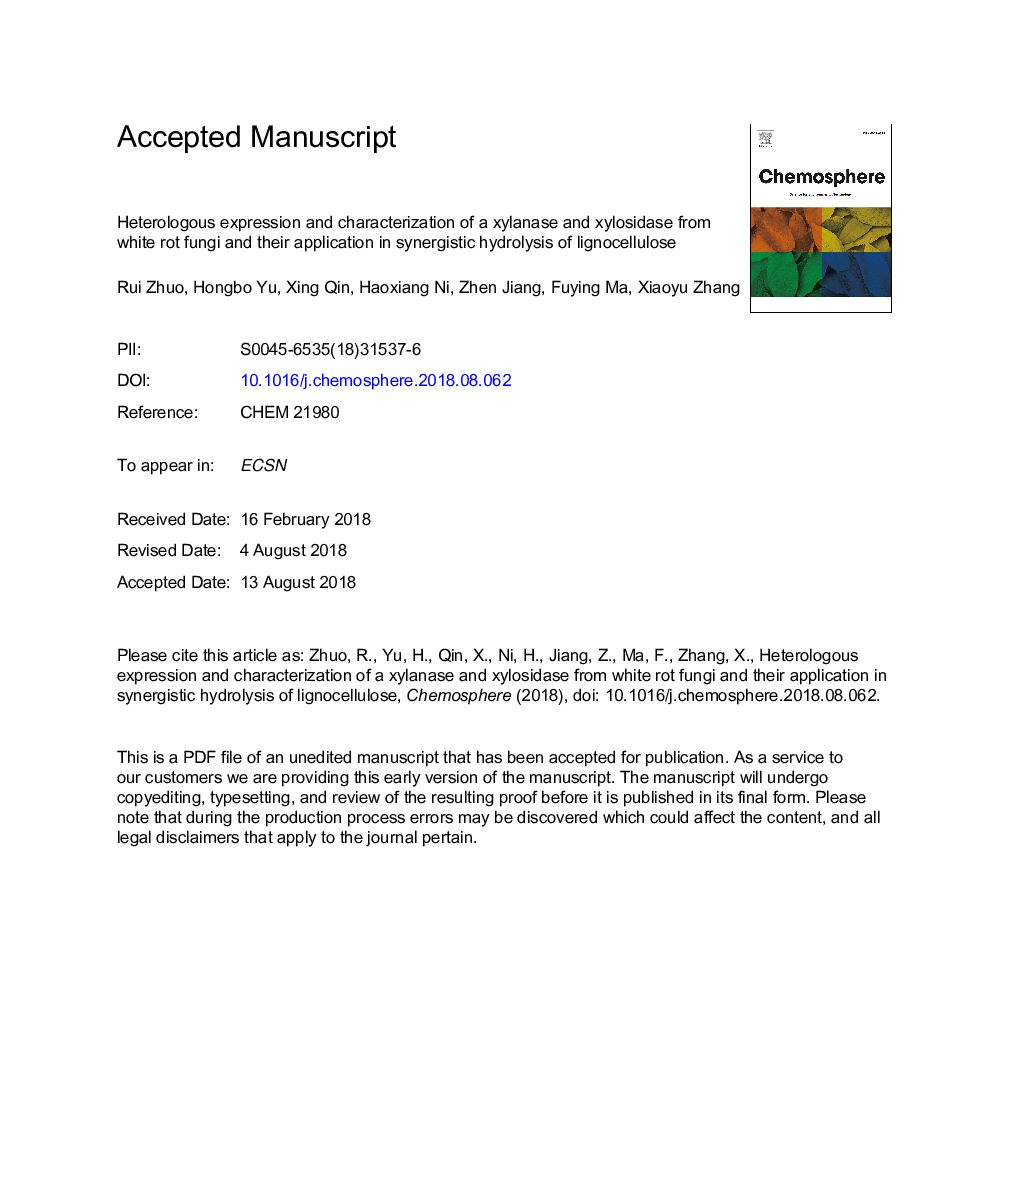 بیان و ویژگی هیدرولوژیک یک زایلاناز و زایلوزیداز از قارچهای پودر سفید و کاربرد آن در هیدرولیز سینرژیک لیگنوسلولوز